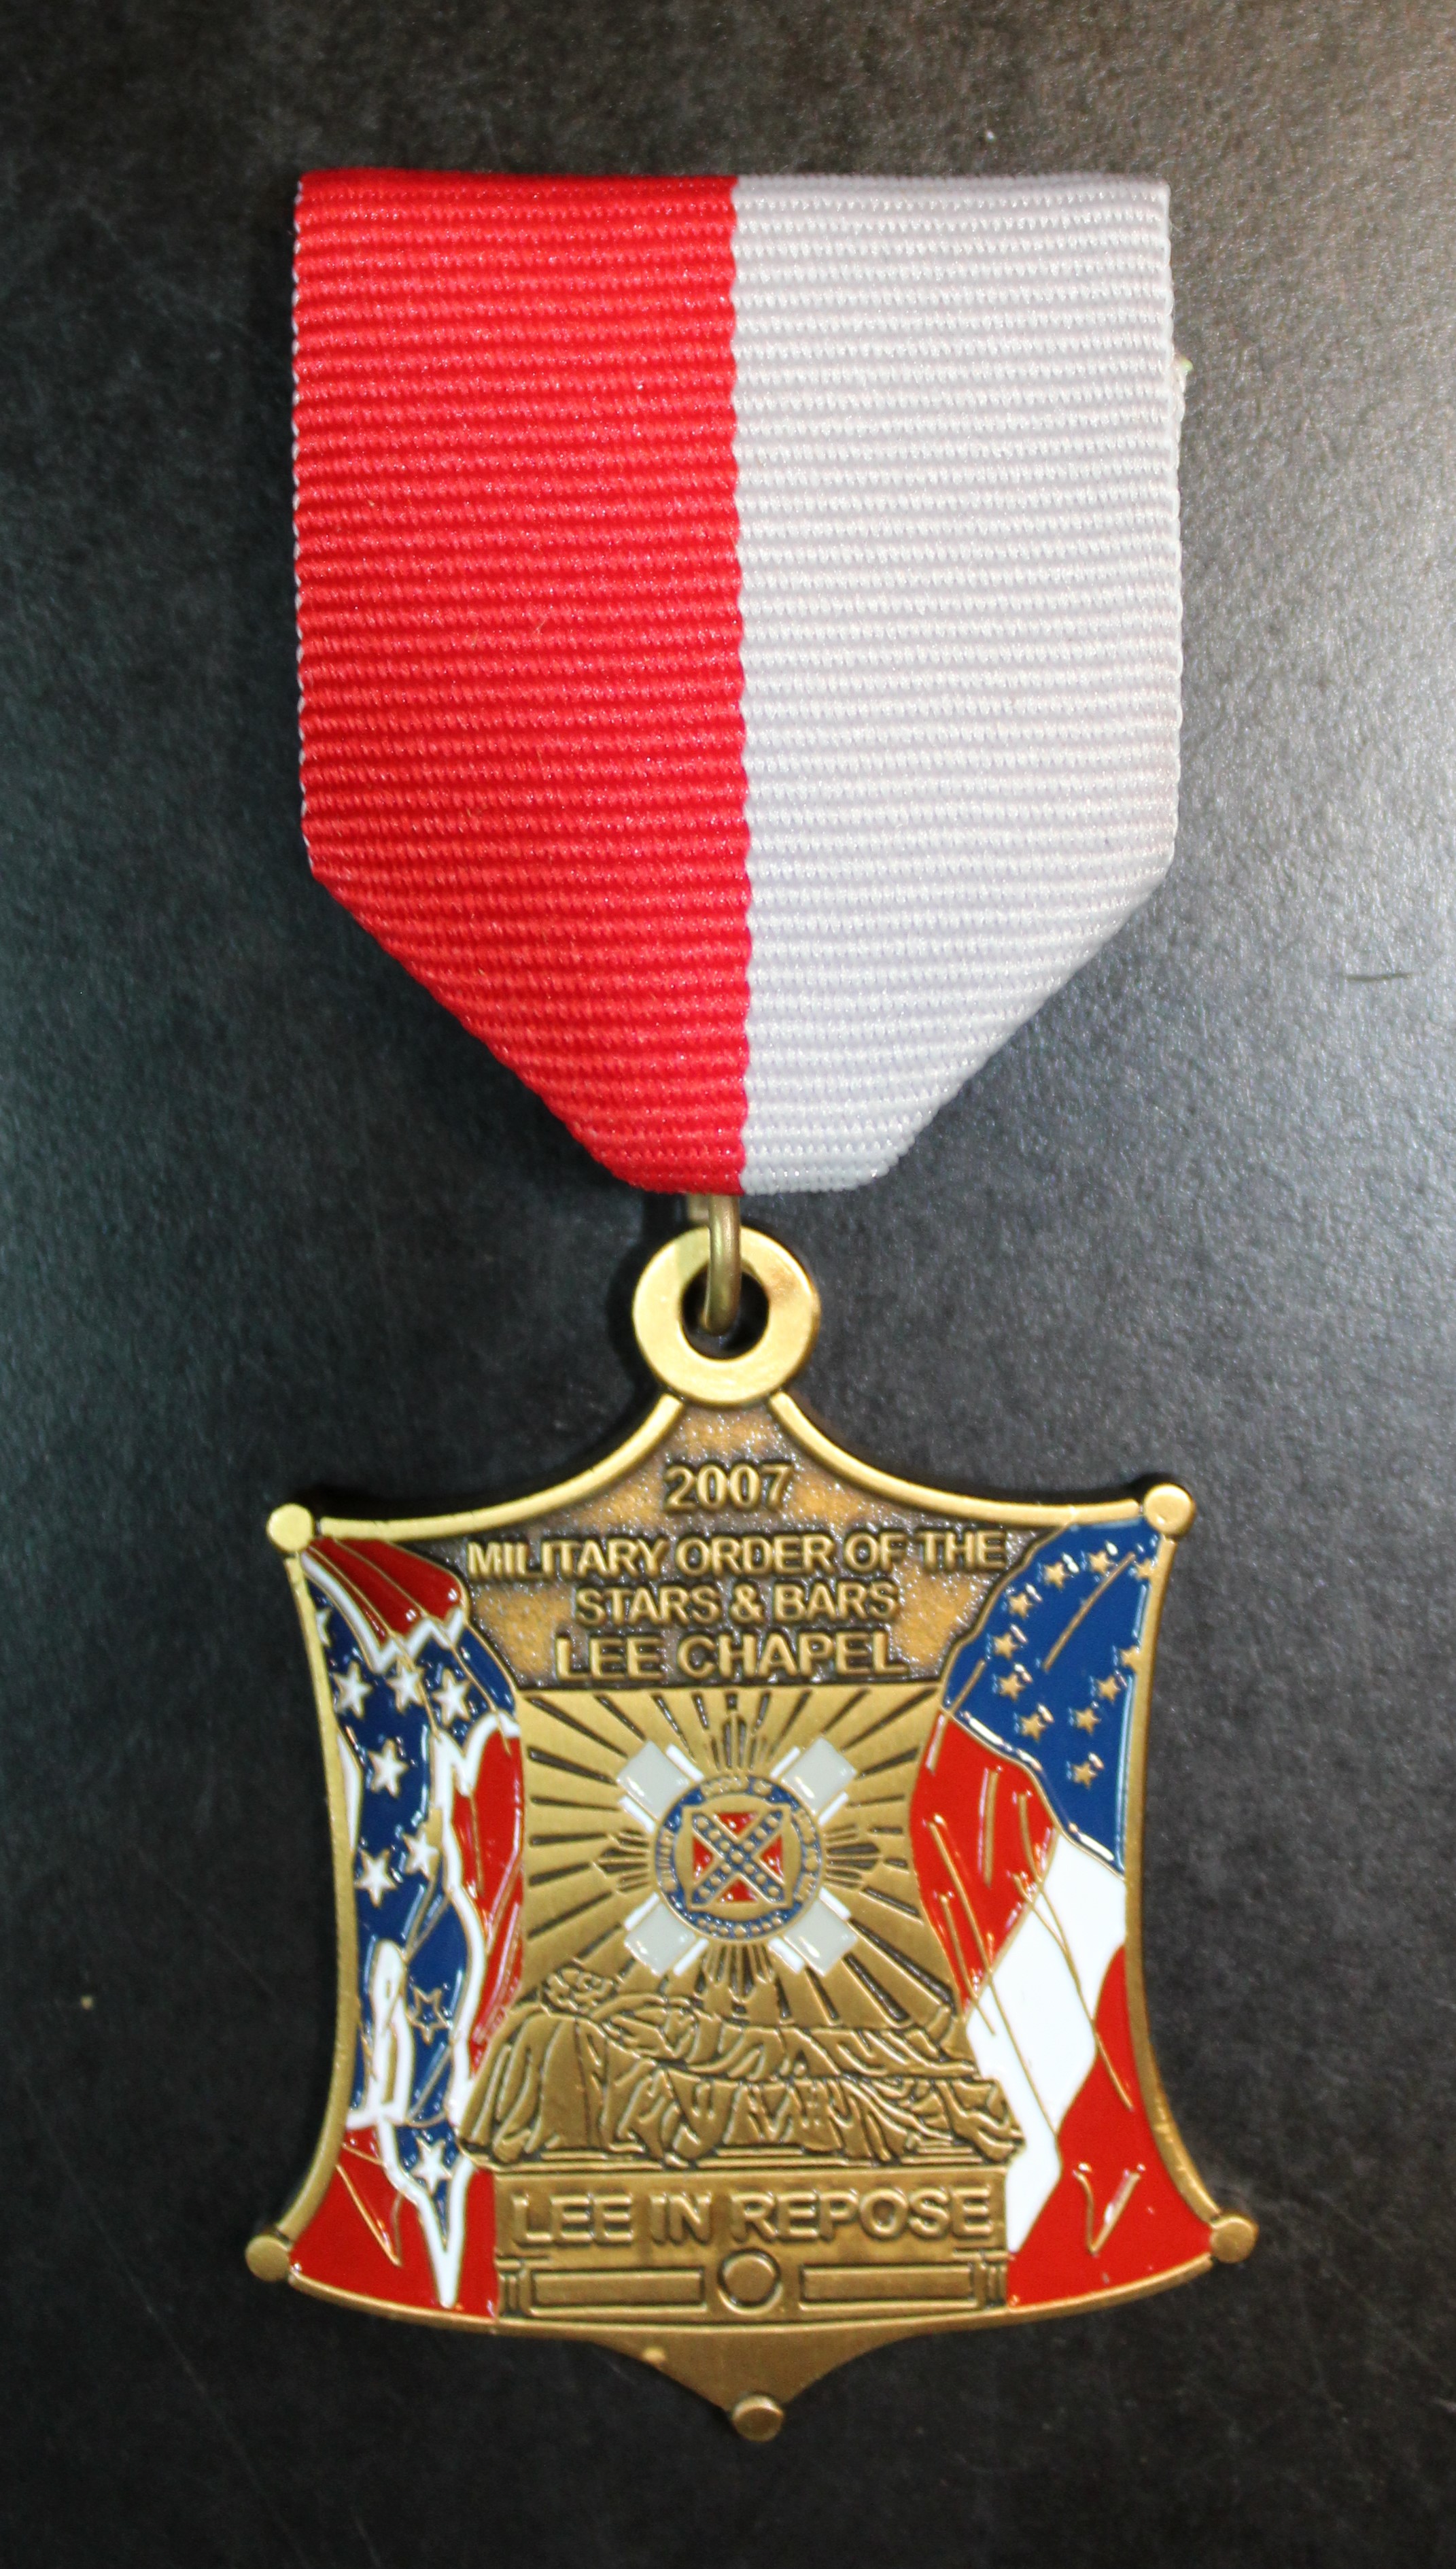 2007 Lee Chapel Medal